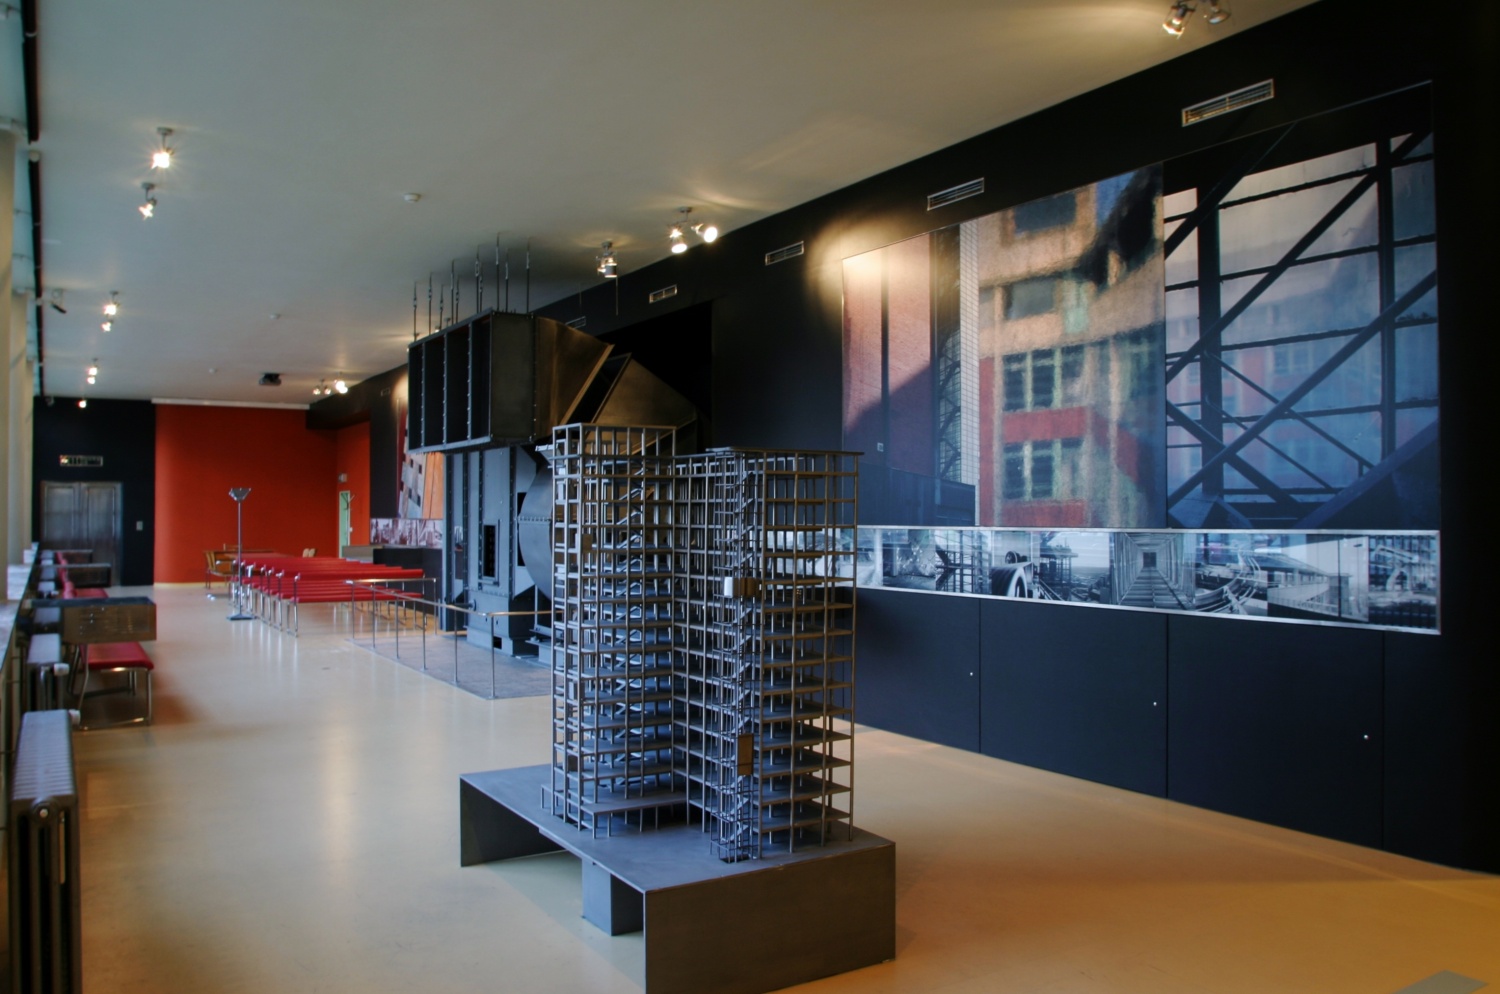 Projekt rekonstrukce správní budovy 21 firmy Baťa ve Zlíně realizoval CENTROPROJEKT